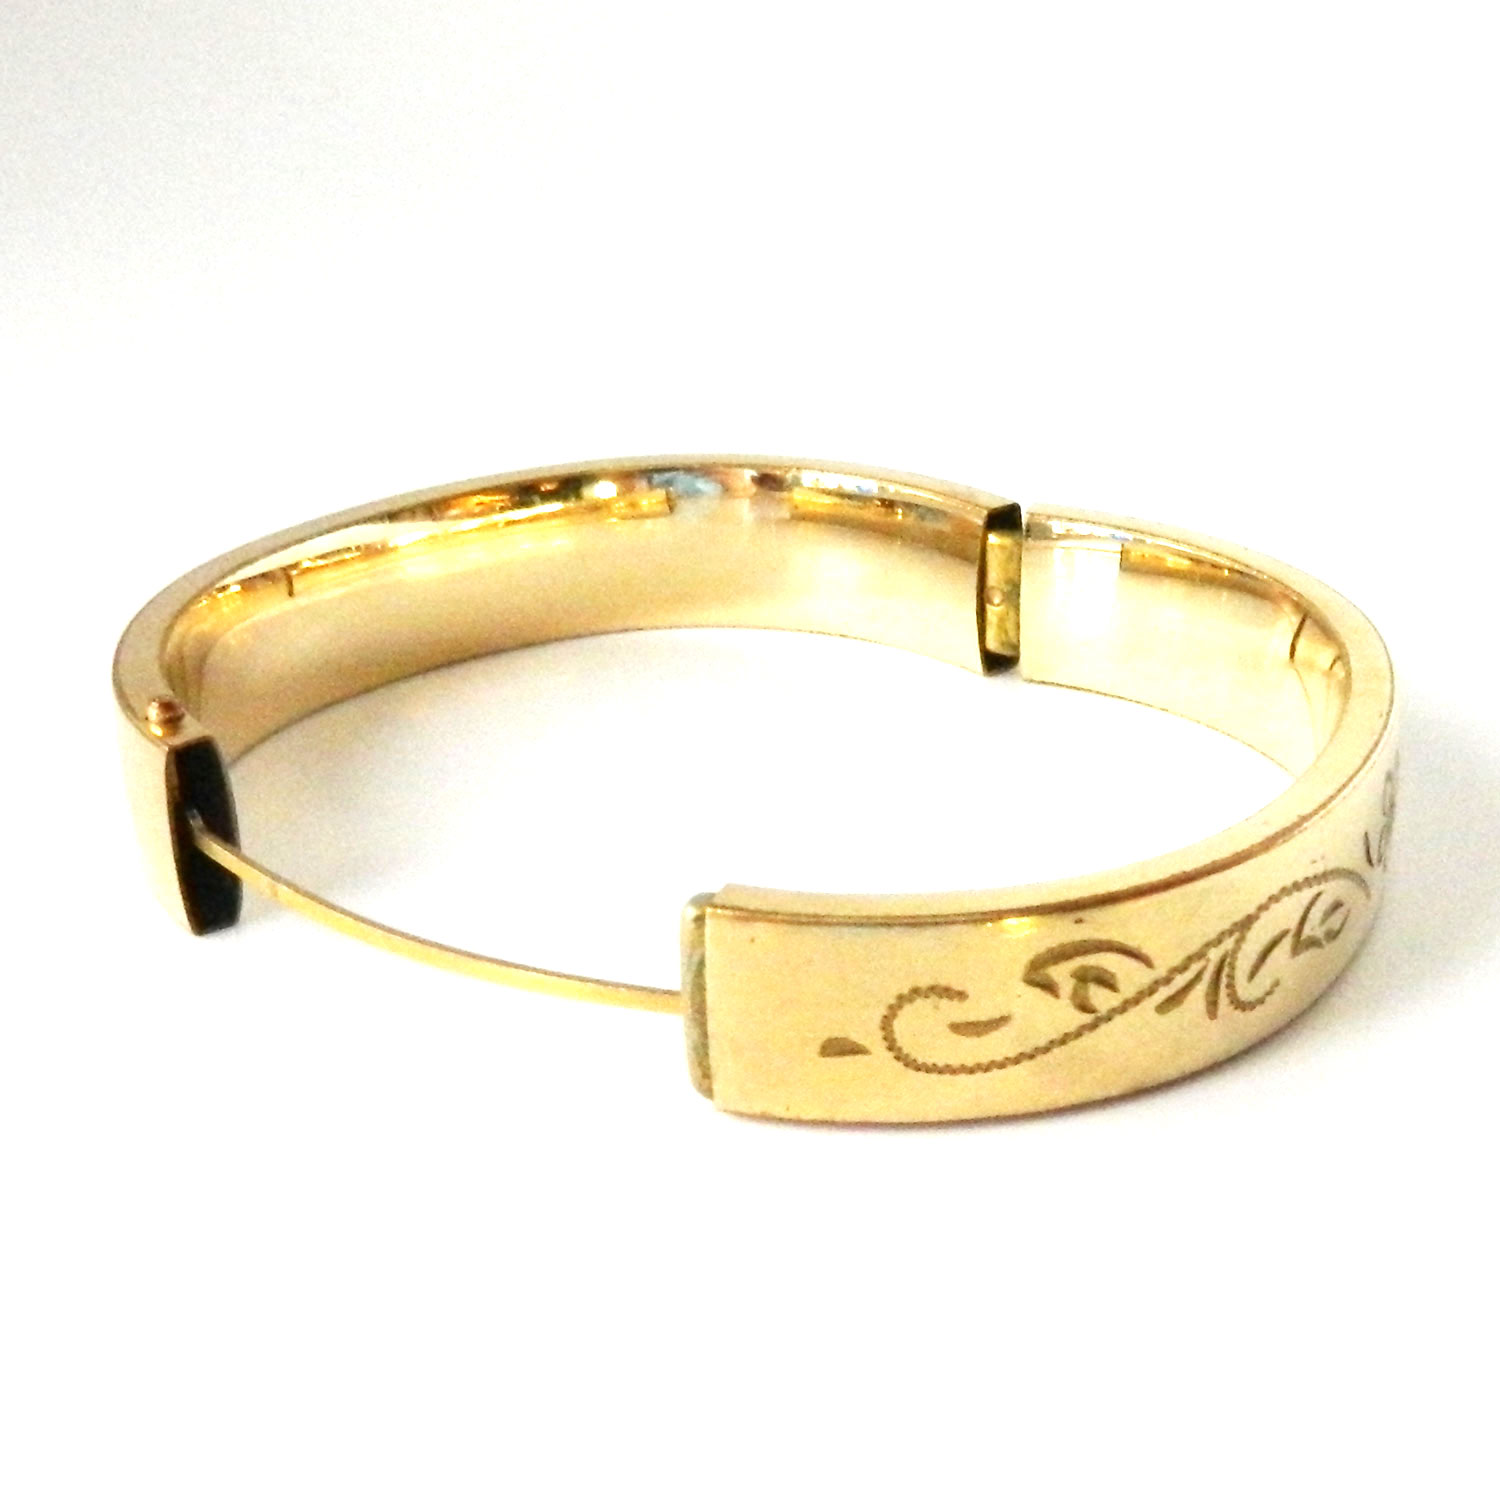 Edwardian gold filled bangle bracelet